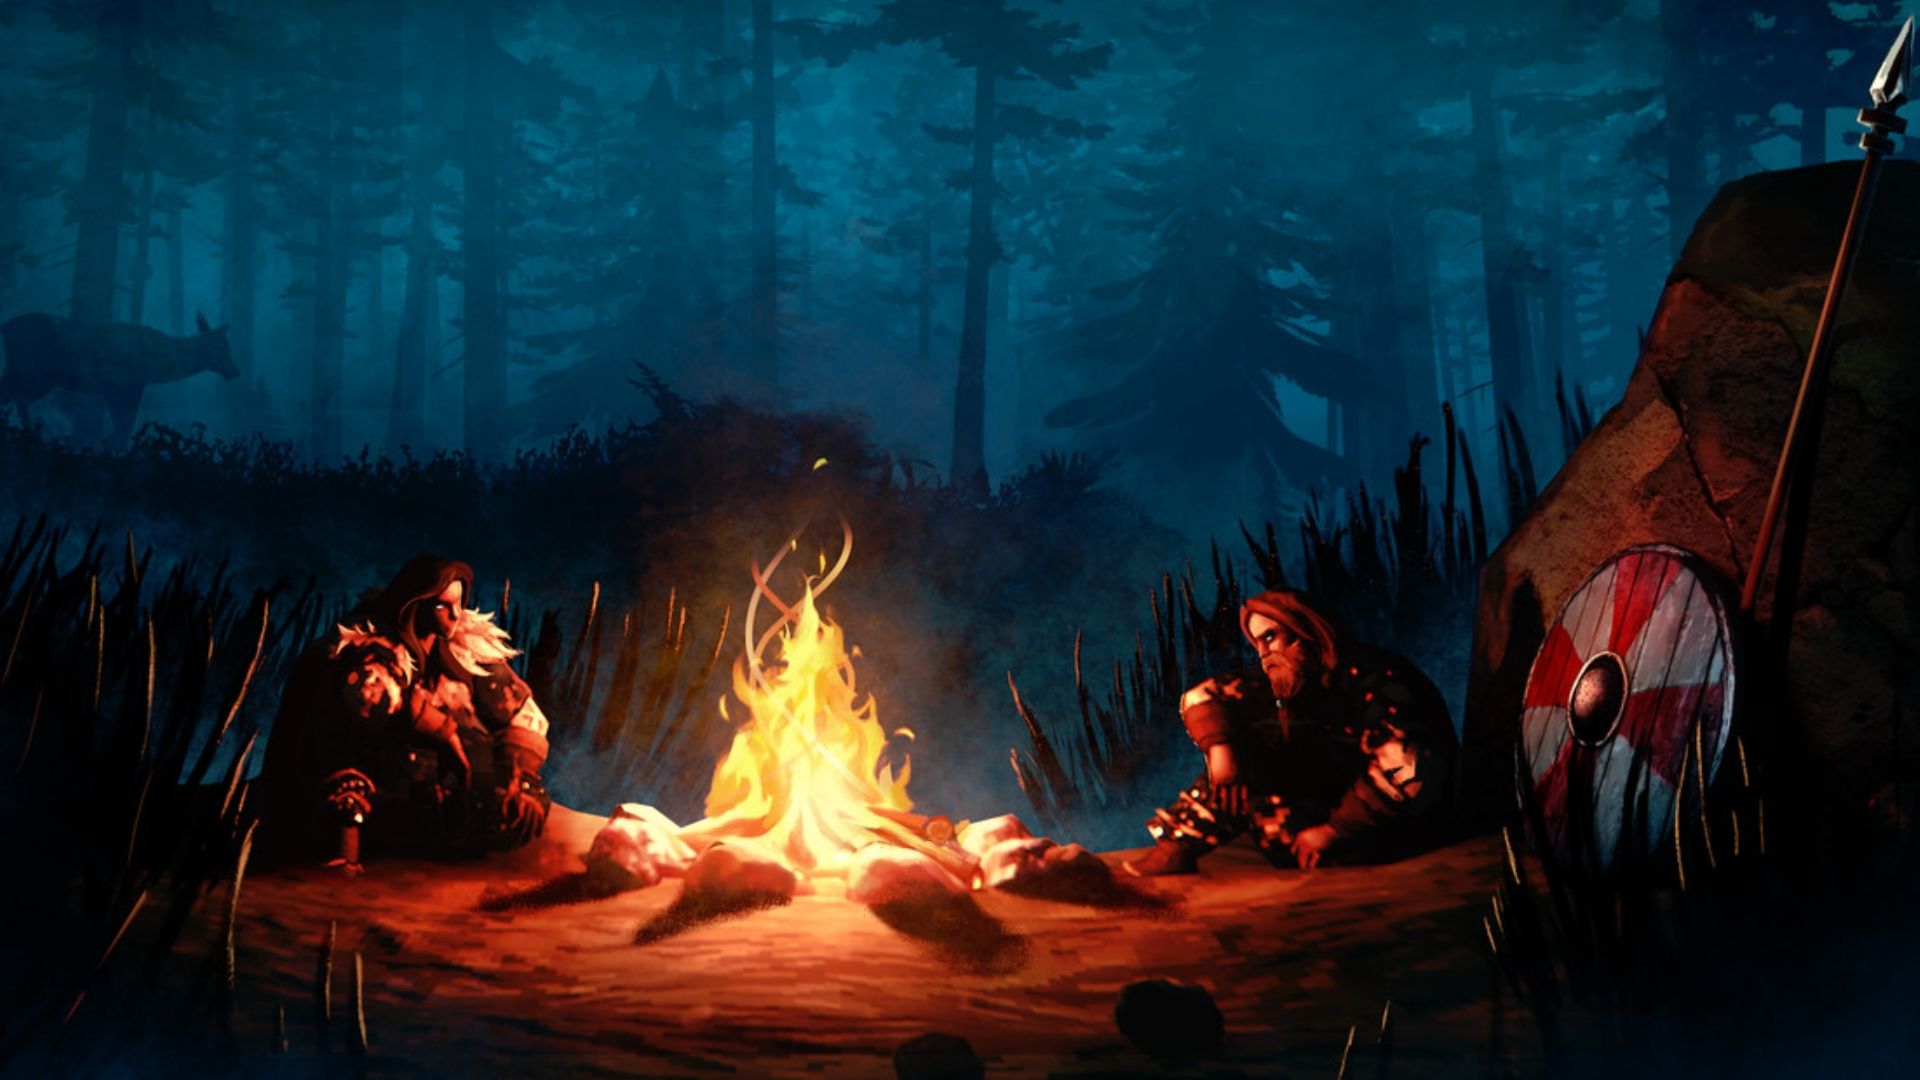 بقا کے بہترین کھیل: دو شکاری آگ کے آس پاس بیٹھے ہیں